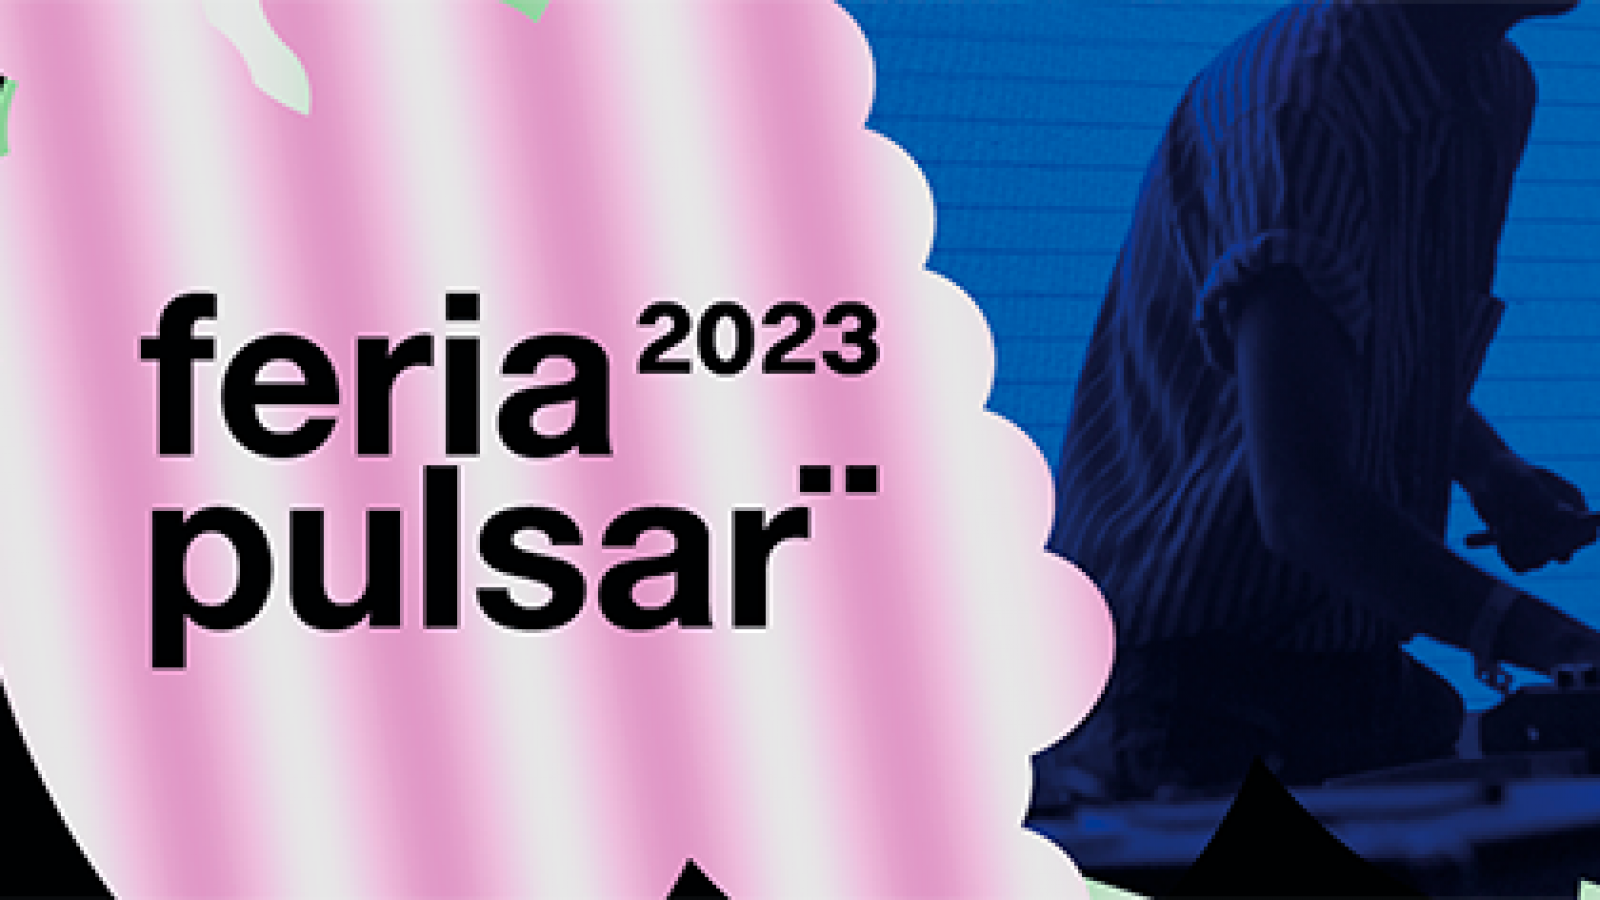 Feria Pulsar 2023 anuncia sus primeros artistas: Fran Valenzuela, Congreso, Santaferia, Glup y Cristóbal Briceño son algunos